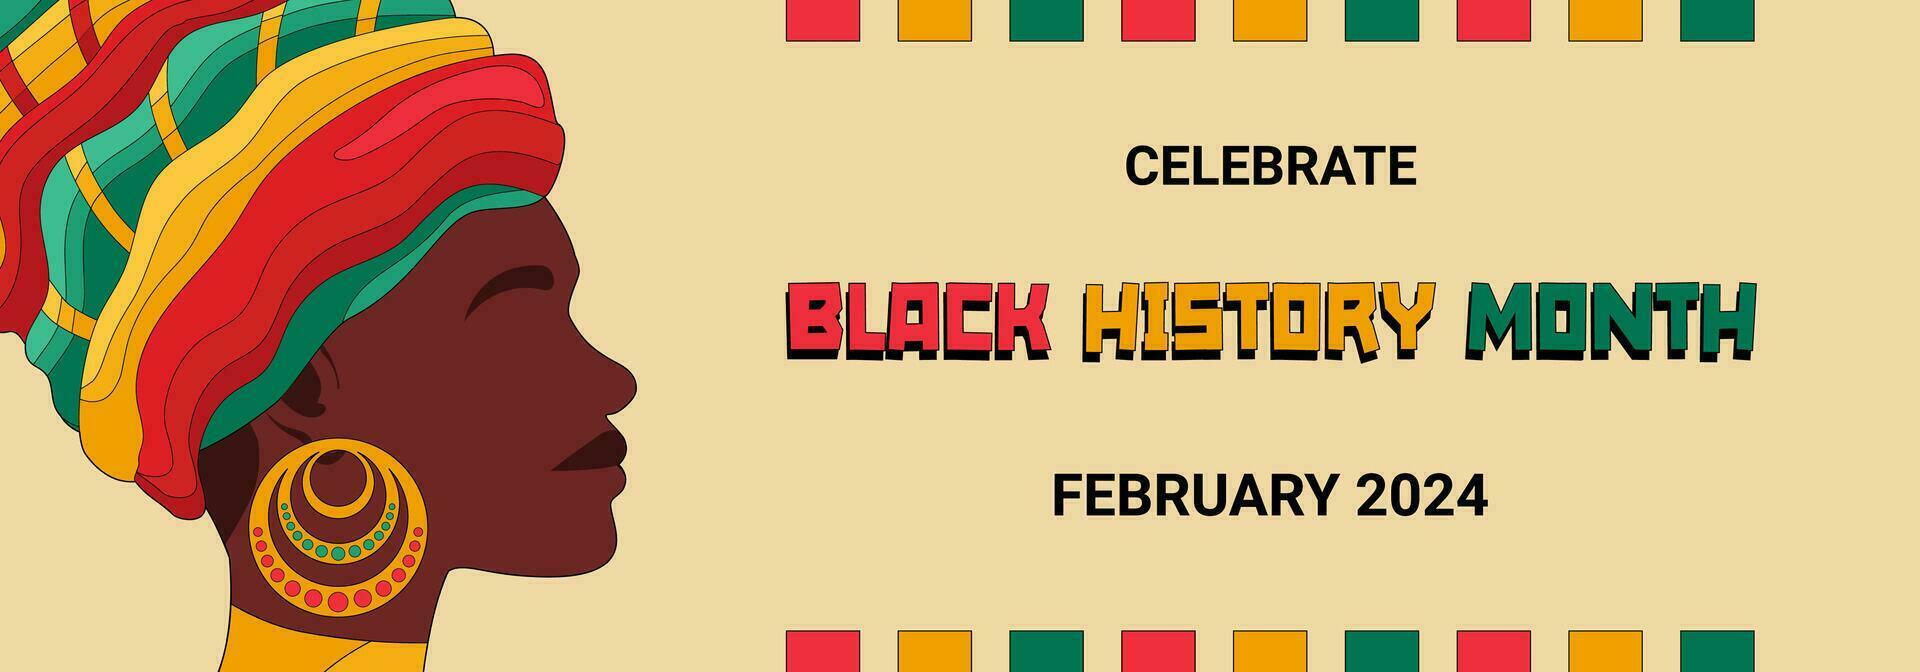 zwart geschiedenis maand banier met zwart vrouw gezicht profiel en tekst met nationaal kleur van Afrika vlag, zwart geschiedenis maand viering poster. vector illustratie.